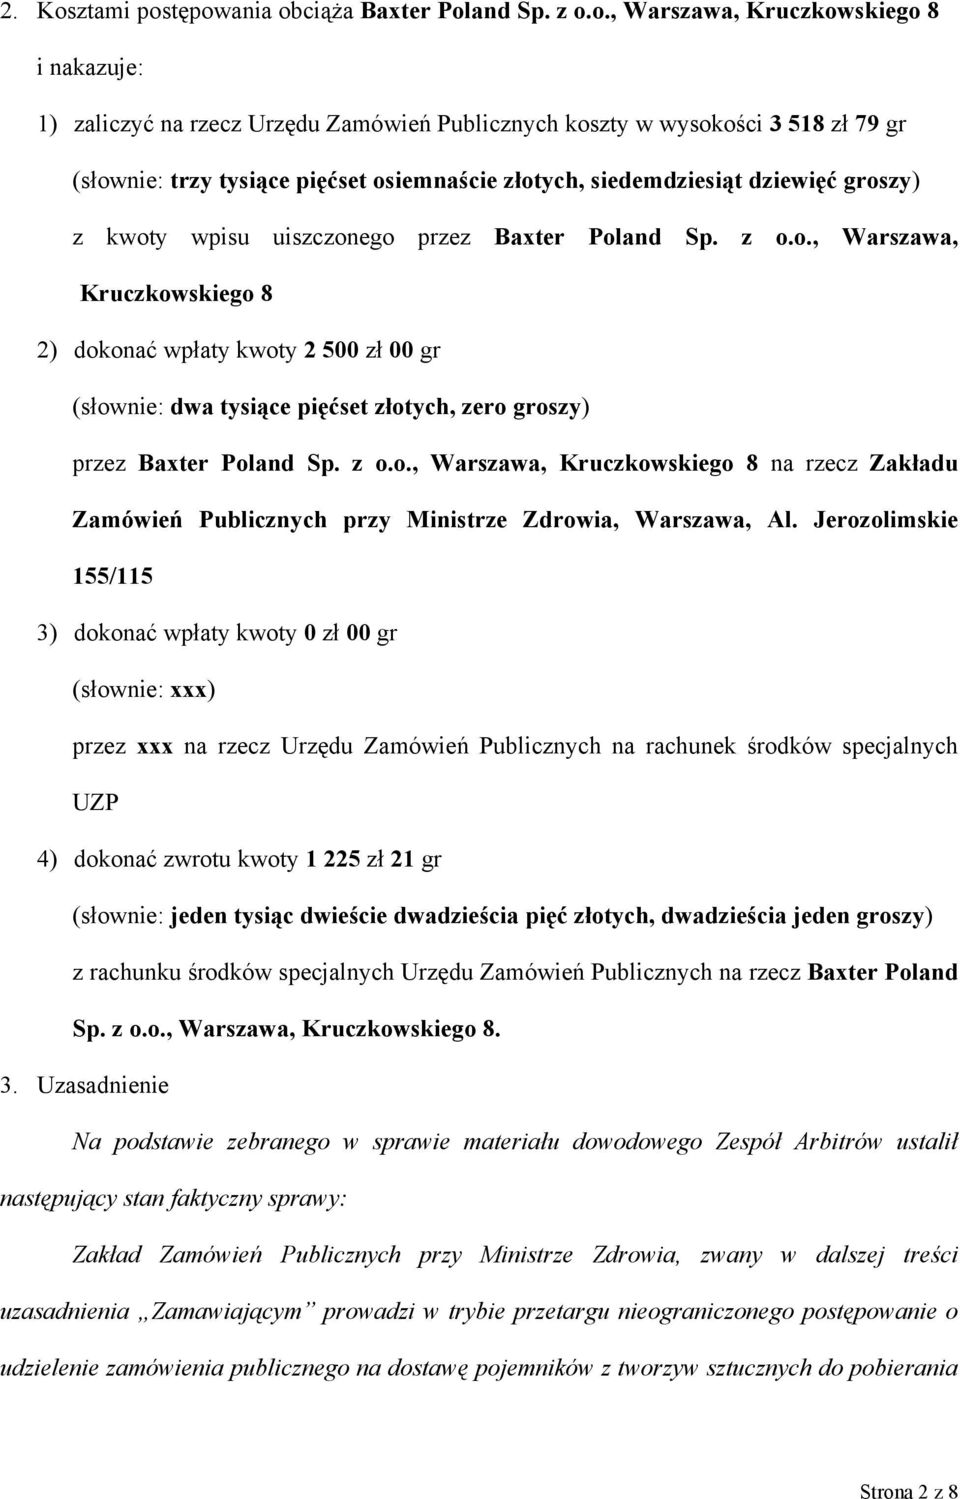 tępowania obciąża Baxter Poland Sp. z o.o., Warszawa, Kruczkowskiego 8 i nakazuje: 1) zaliczyć na rzecz Urzędu Zamówień Publicznych koszty w wysokości 3 518 zł 79 gr (słownie: trzy tysiące pięćset